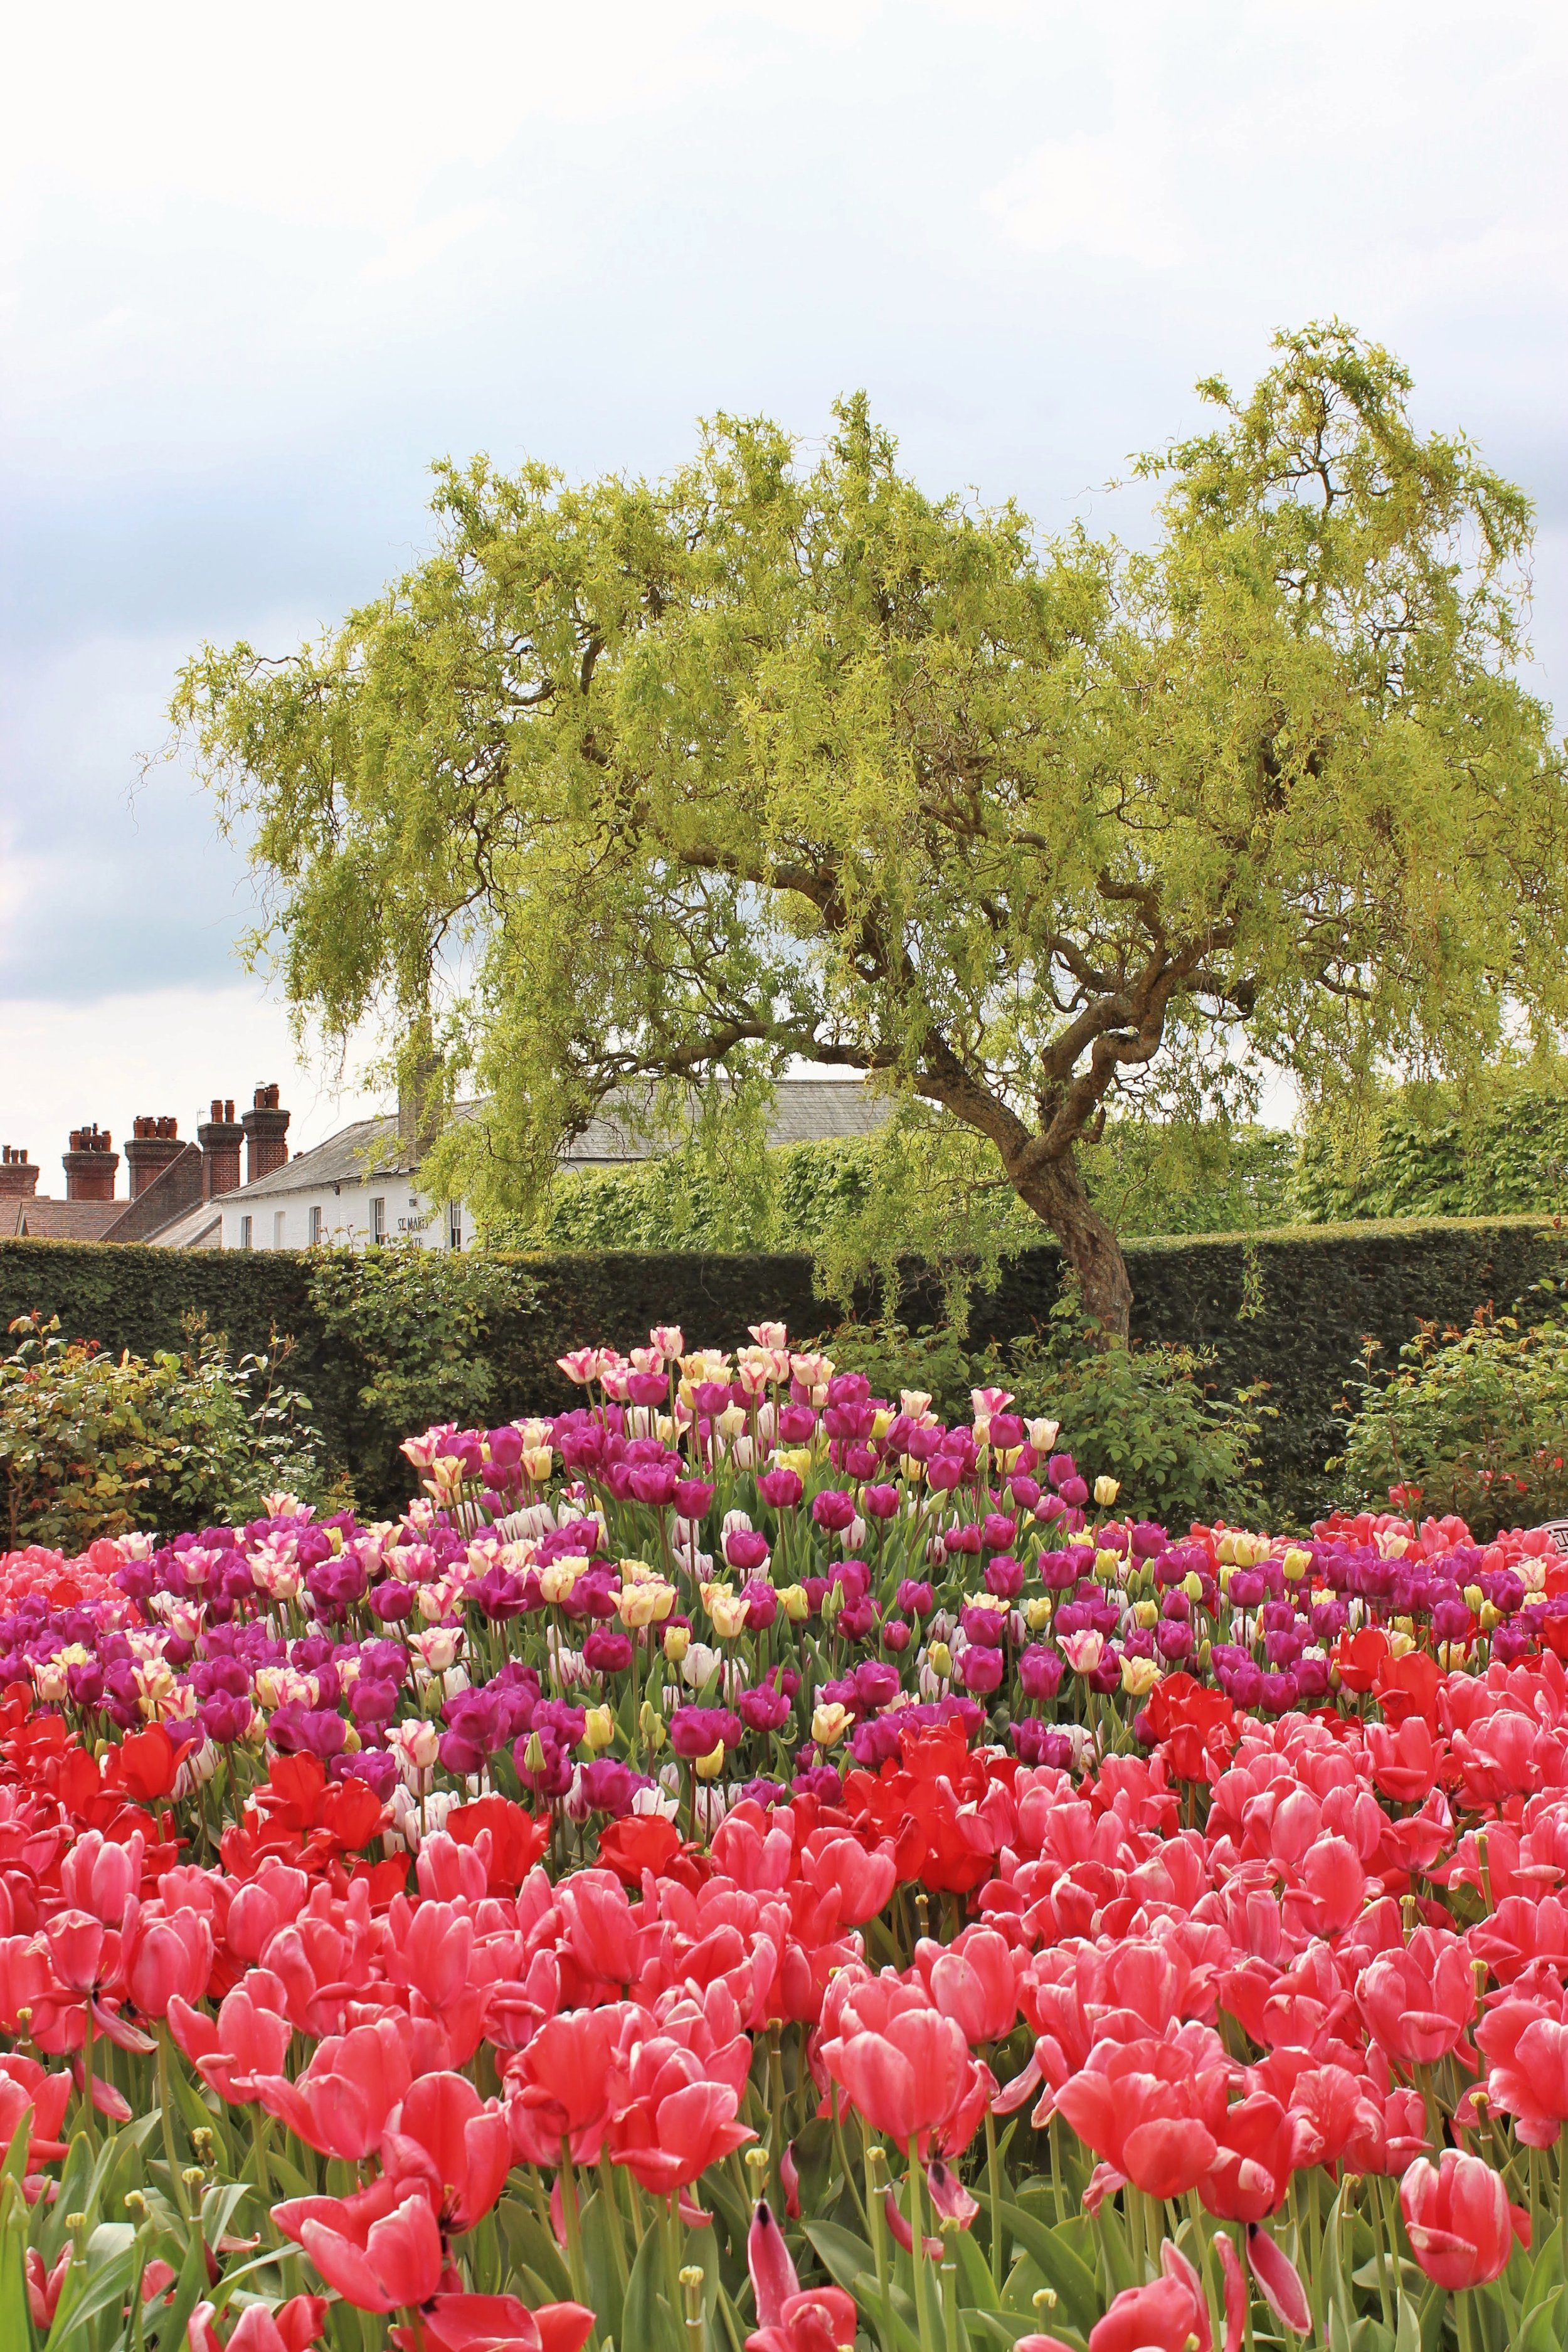 arundel castle garden tulips2.jpg